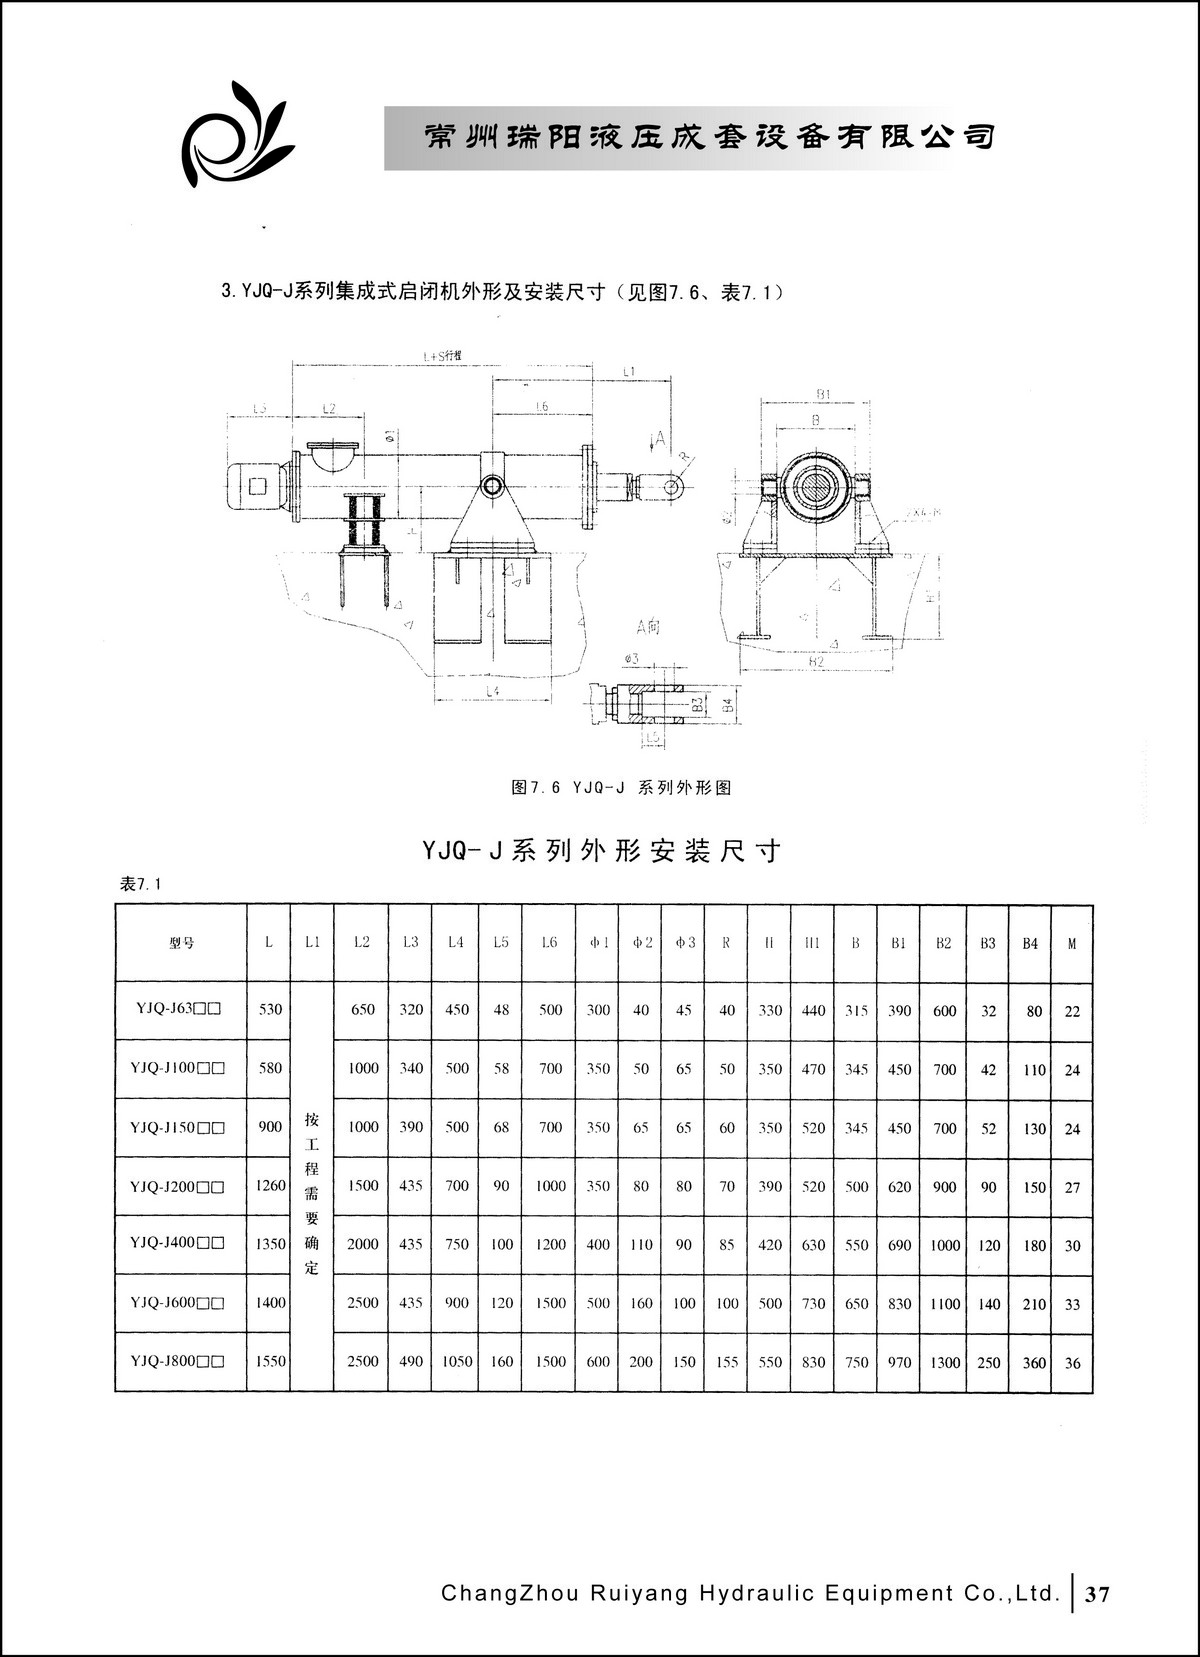 常州瑞阳液压成套设备有限公司产品样本2_页面_37.JPG